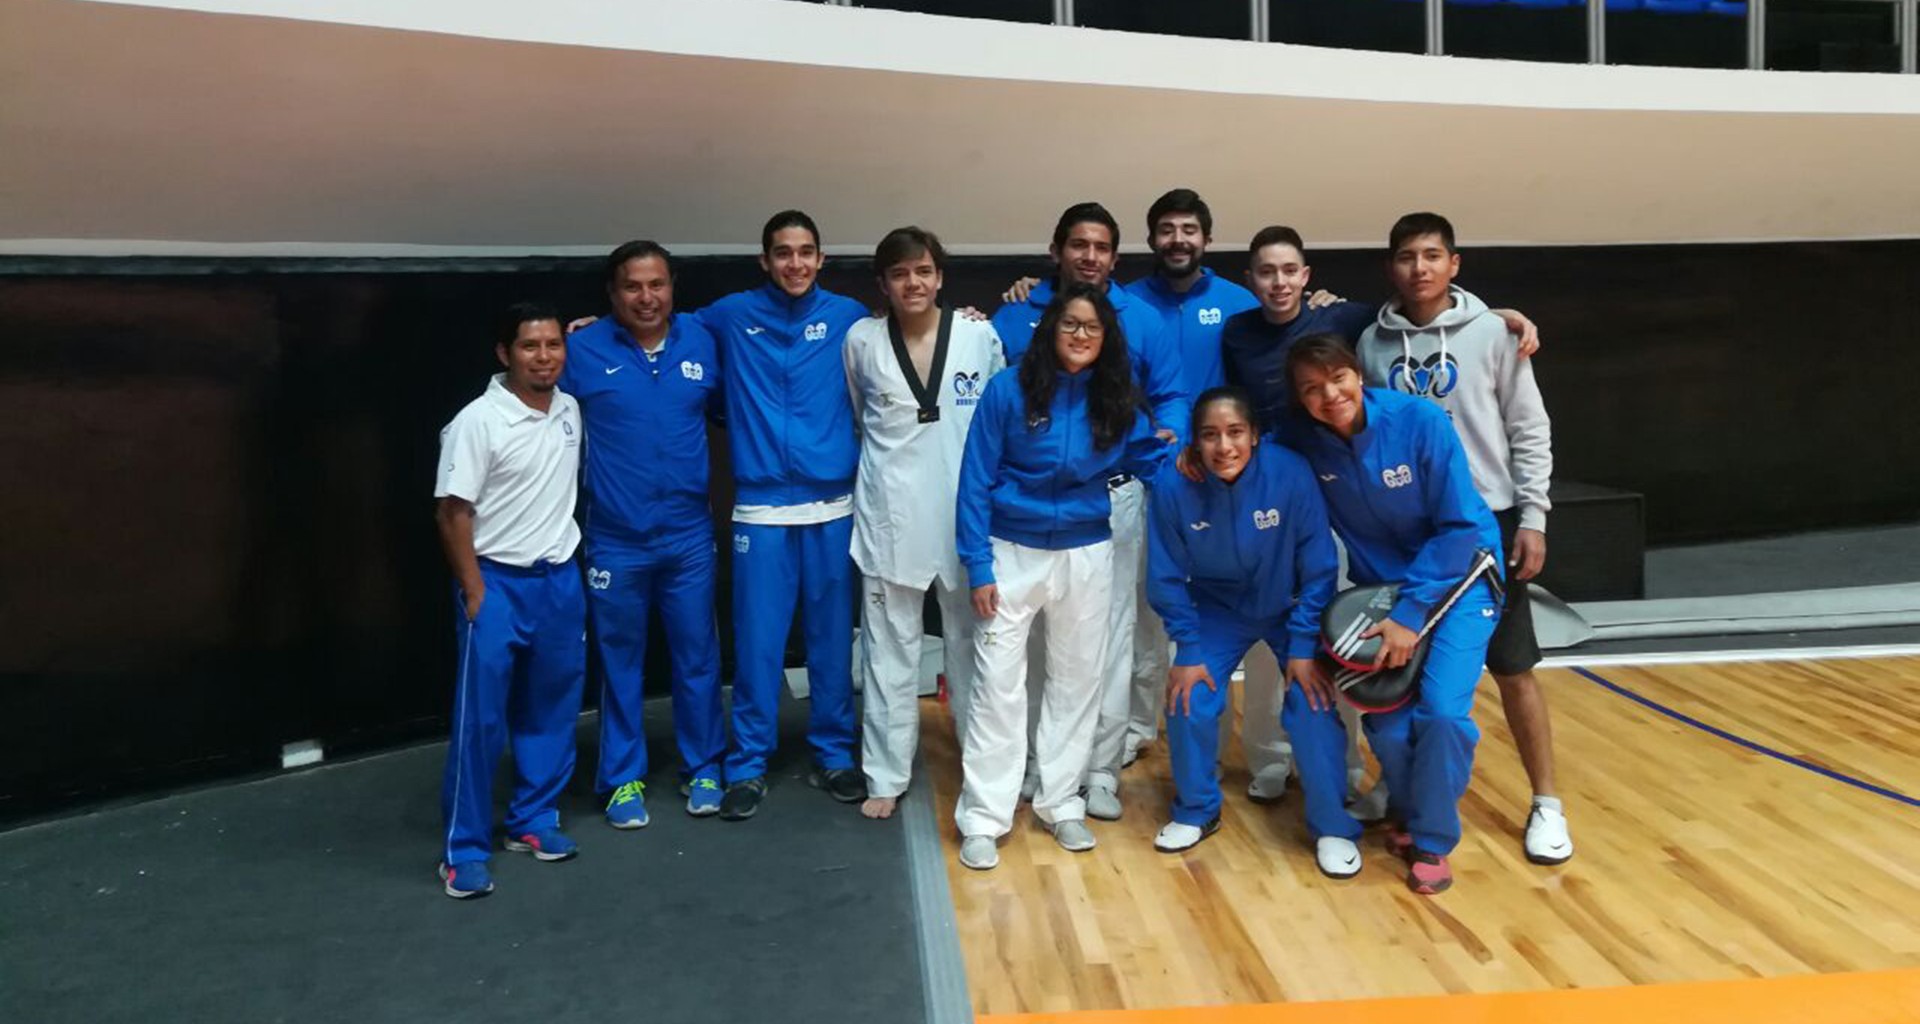 Buen trabajo por parte de los integrantes de taekwondo del Tec de Monterrey en el estatal del CONDDE